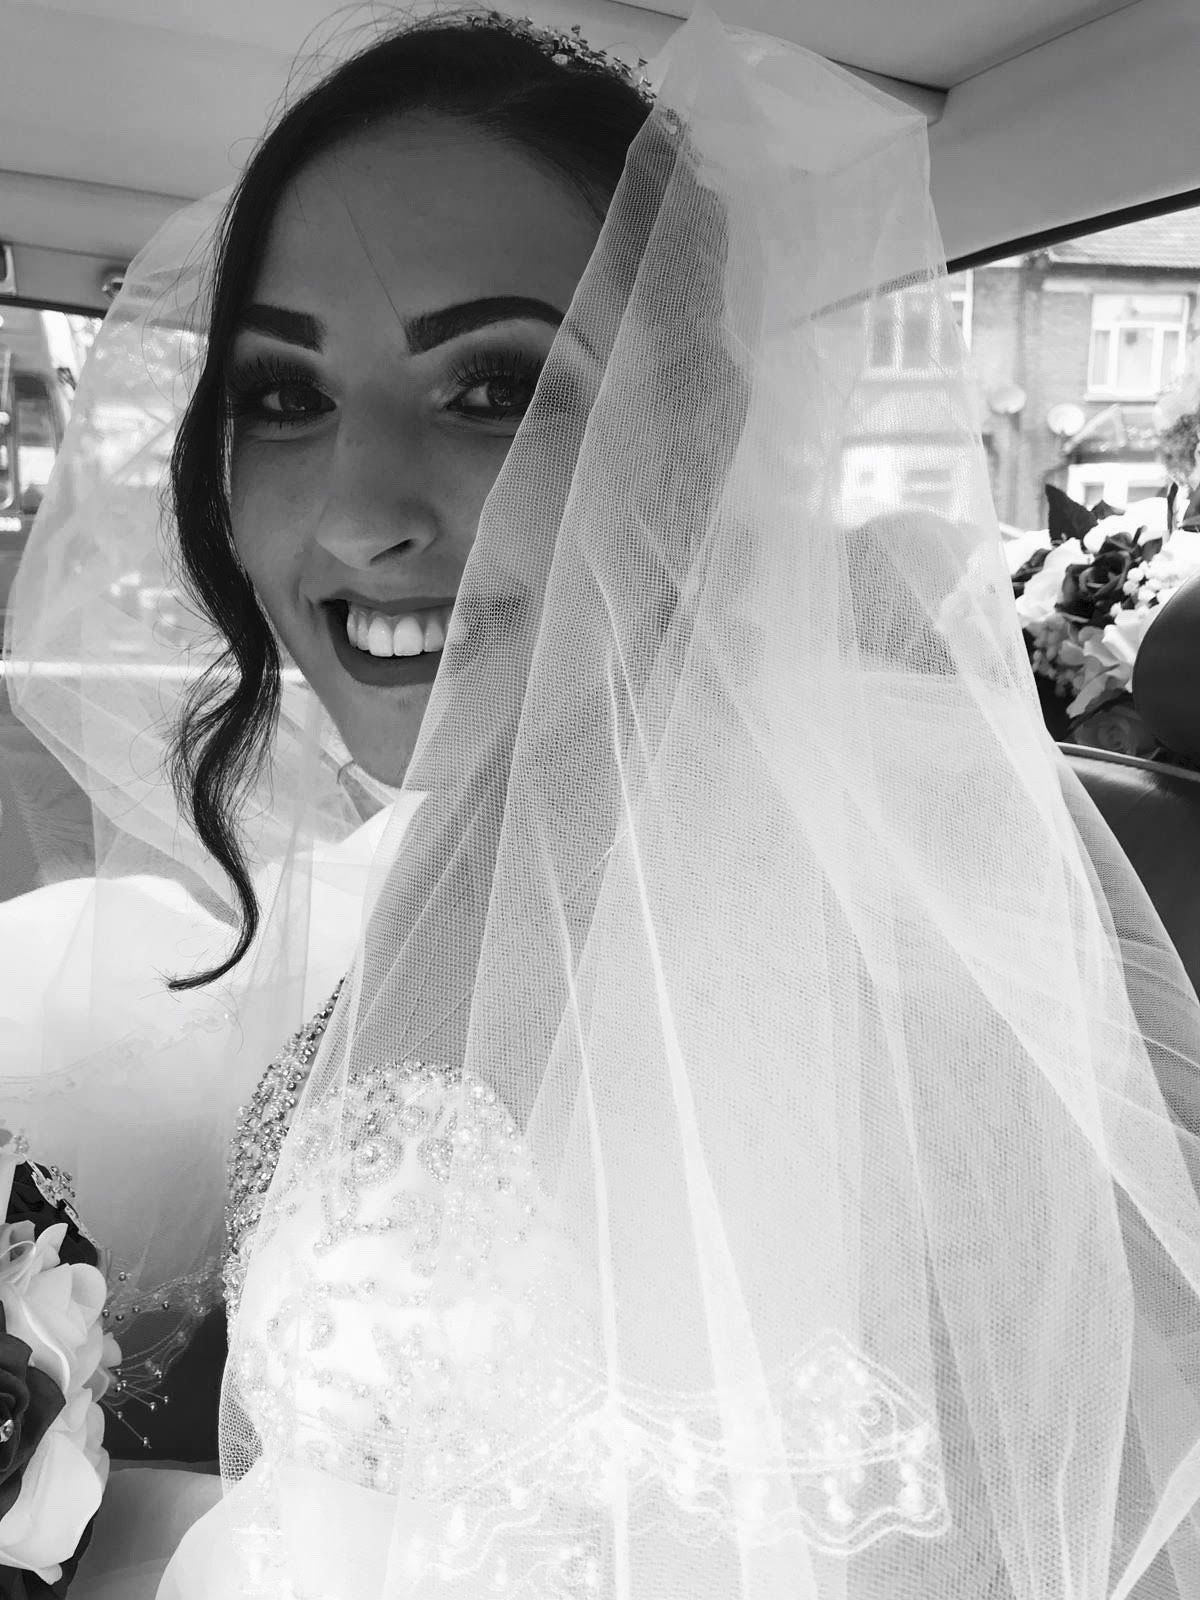 Lady R Wedding & Chauffeur Hire Ltd-Image-30